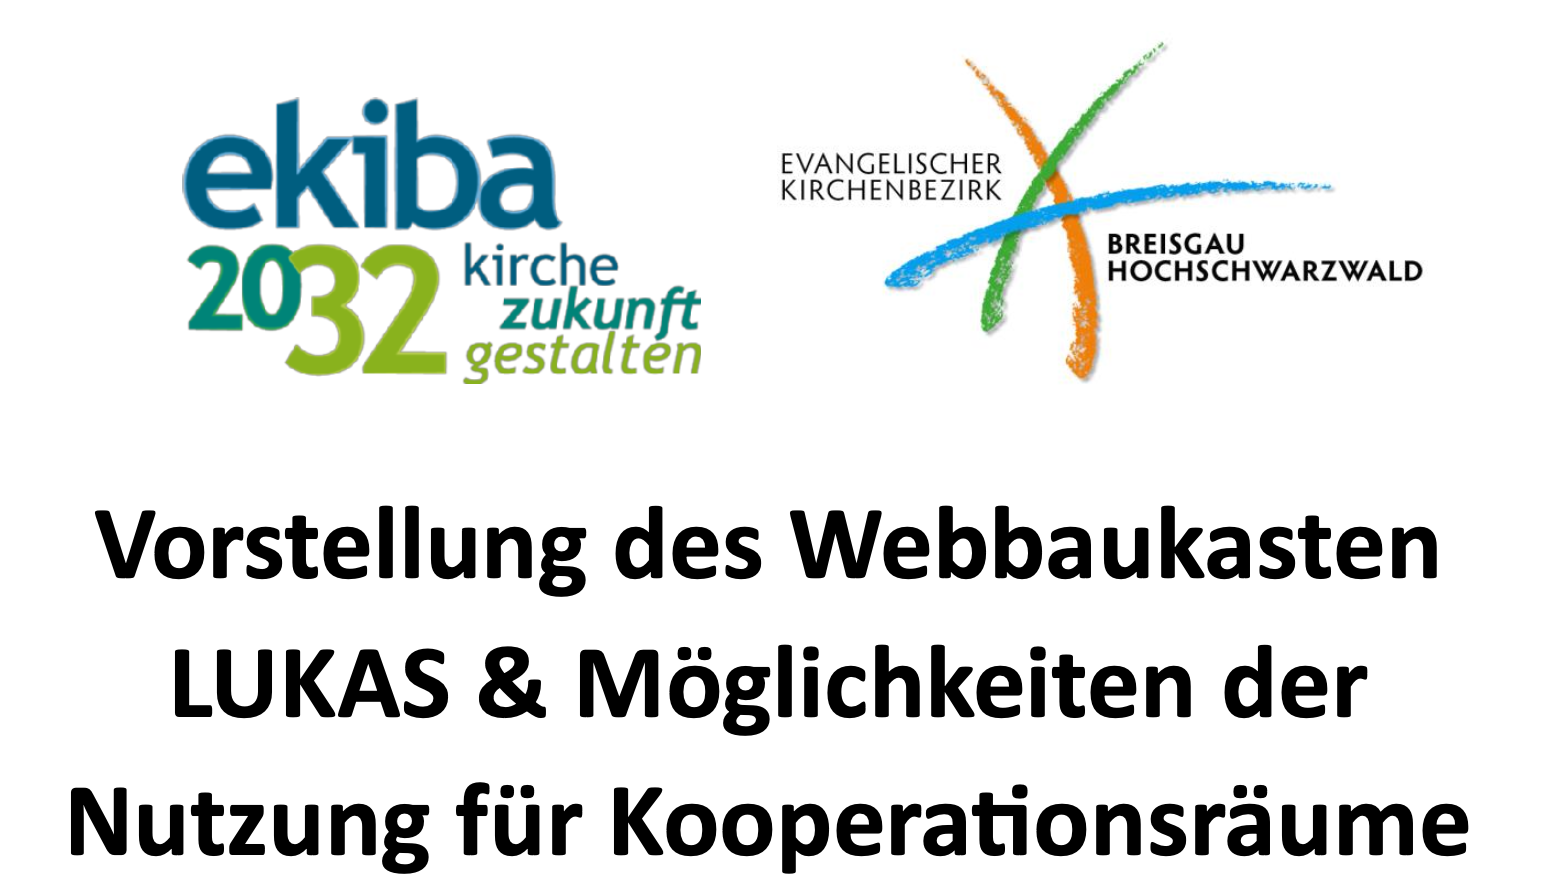 Logo ekiba32 und ekbh und Titel der Veranstaltung 